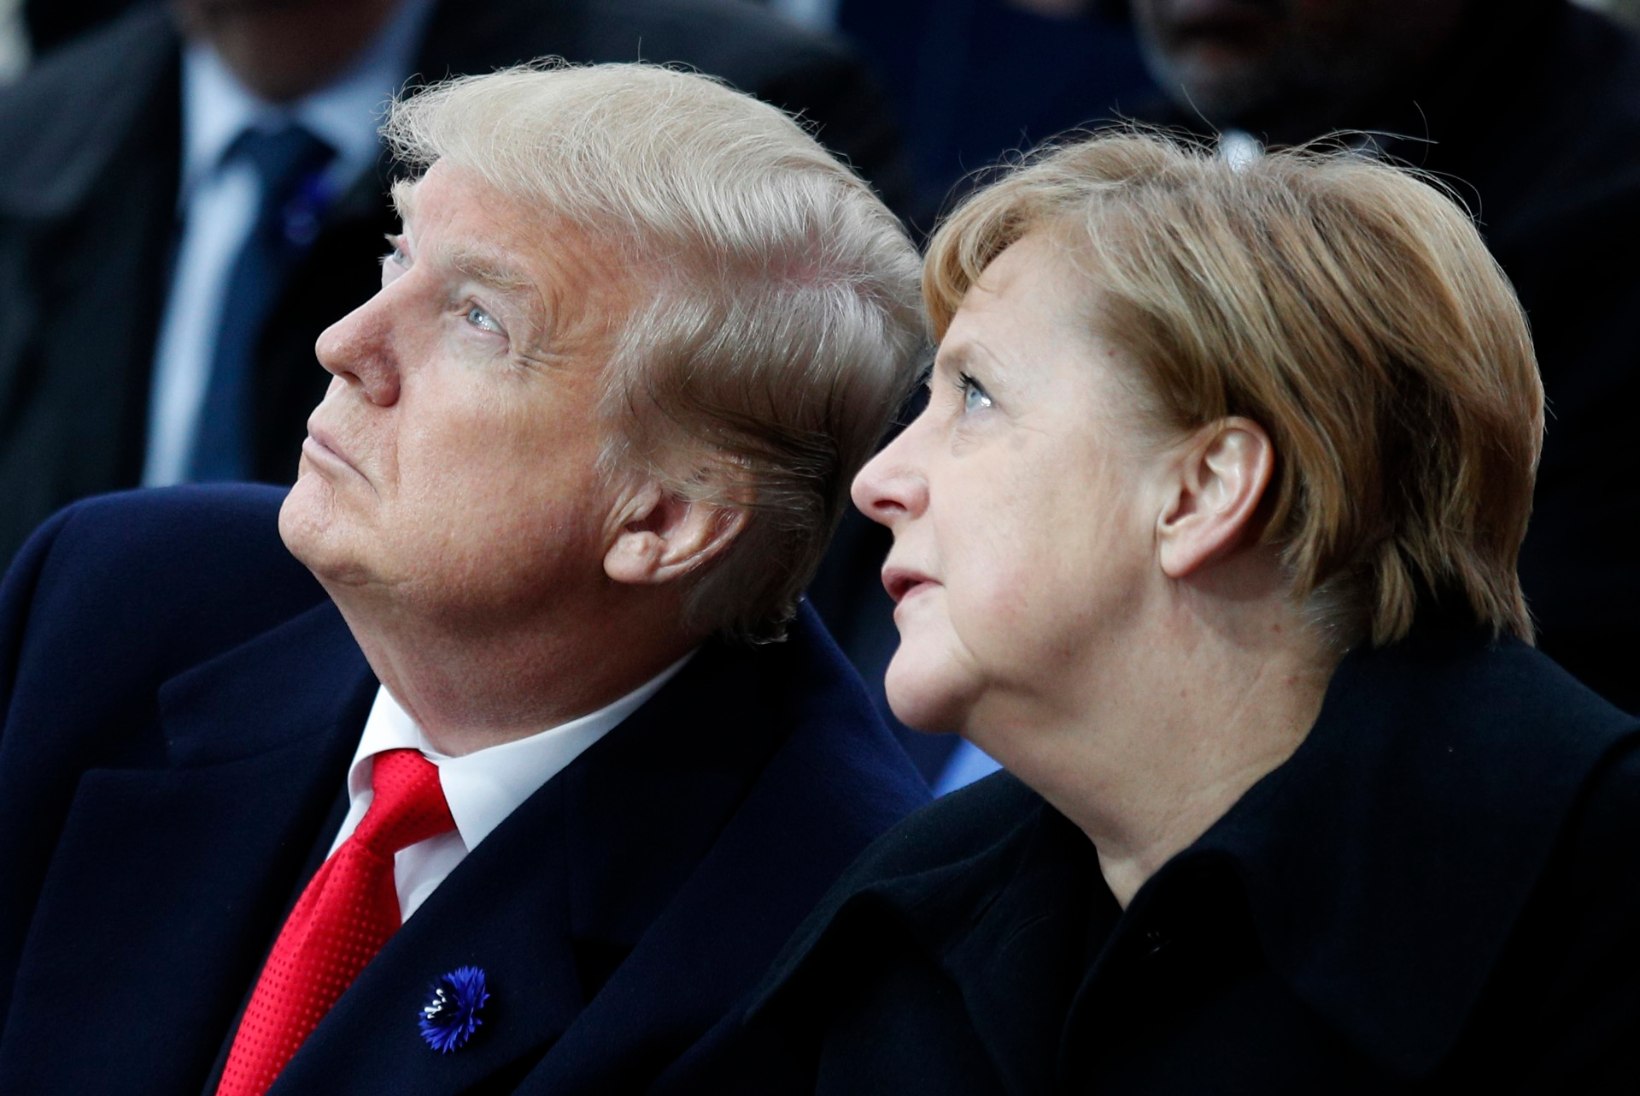 Merkel ja teisedki Euroopa juhtpoliitikud kritiseerisid Twitteri poolt Trumpile määratud keeldu